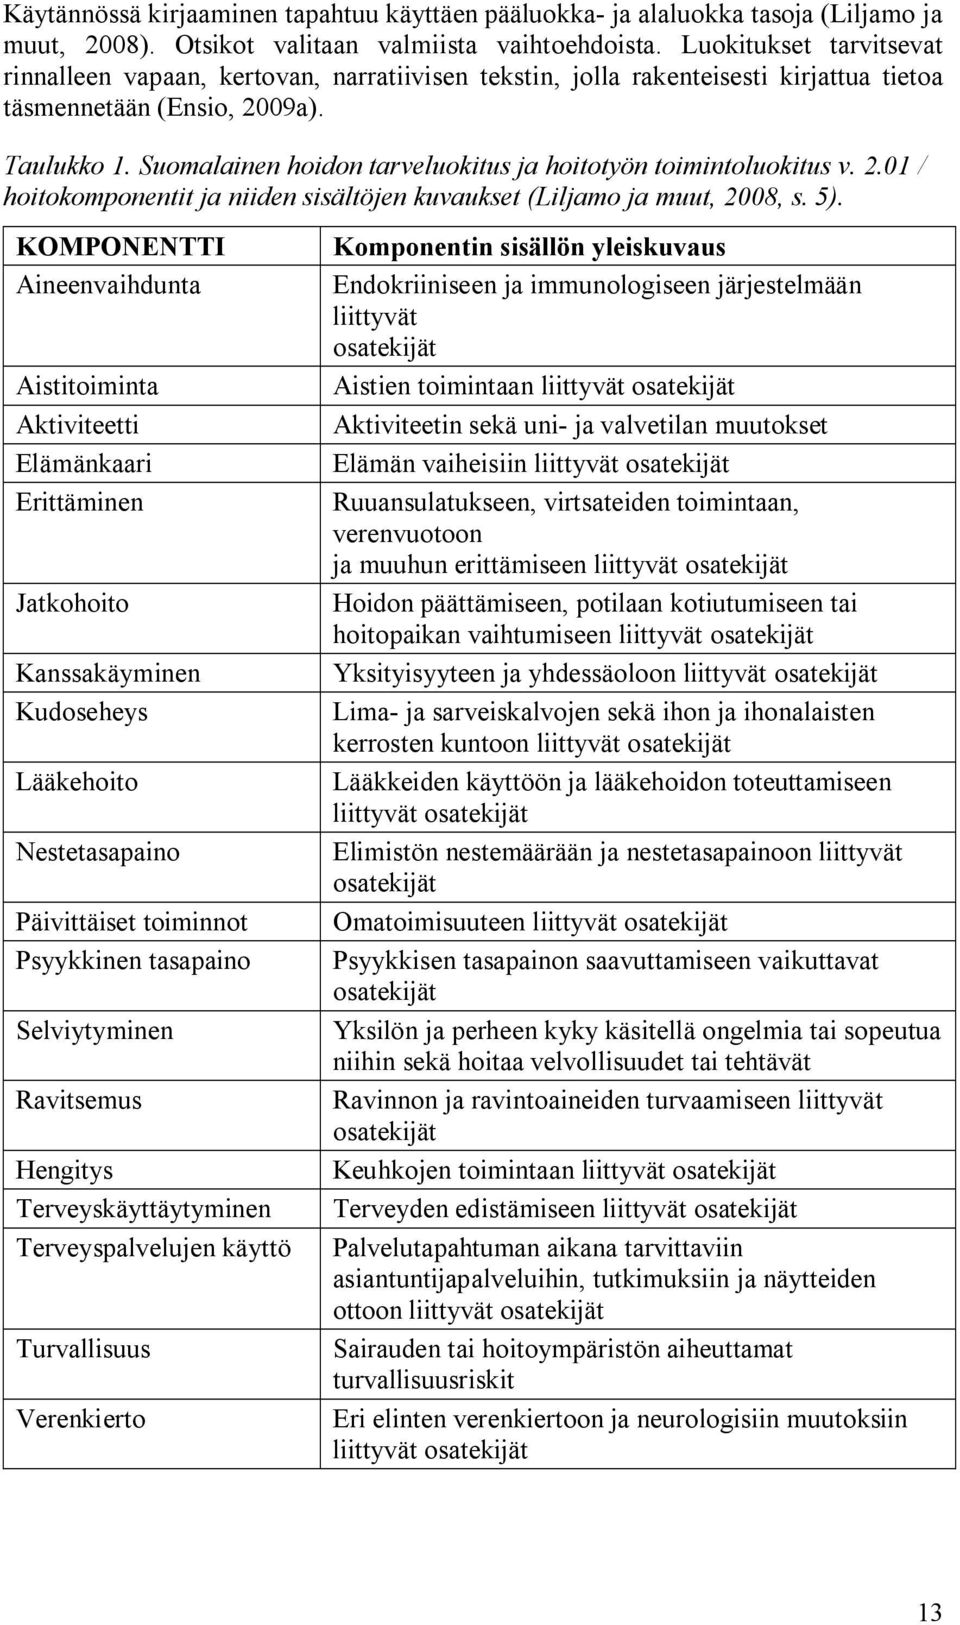 Suomalainen hoidon tarveluokitus ja hoitotyön toimintoluokitus v. 2.01 / hoitokomponentit ja niiden sisältöjen kuvaukset (Liljamo ja muut, 2008, s. 5).